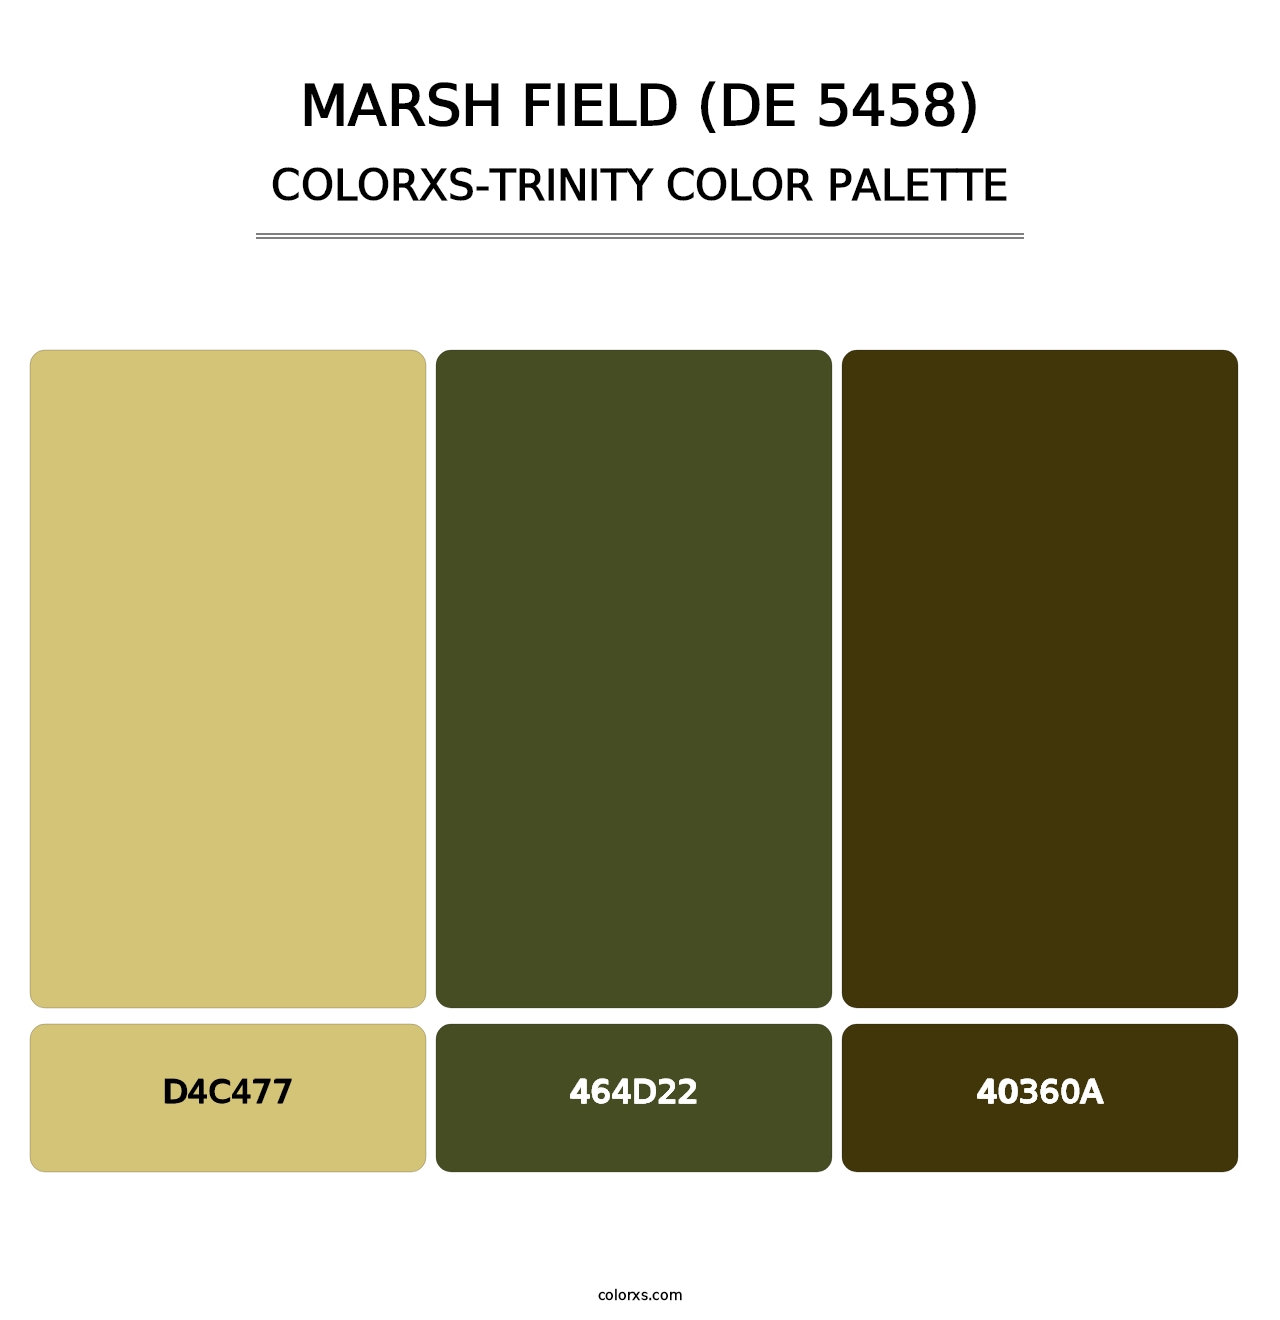 Marsh Field (DE 5458) - Colorxs Trinity Palette